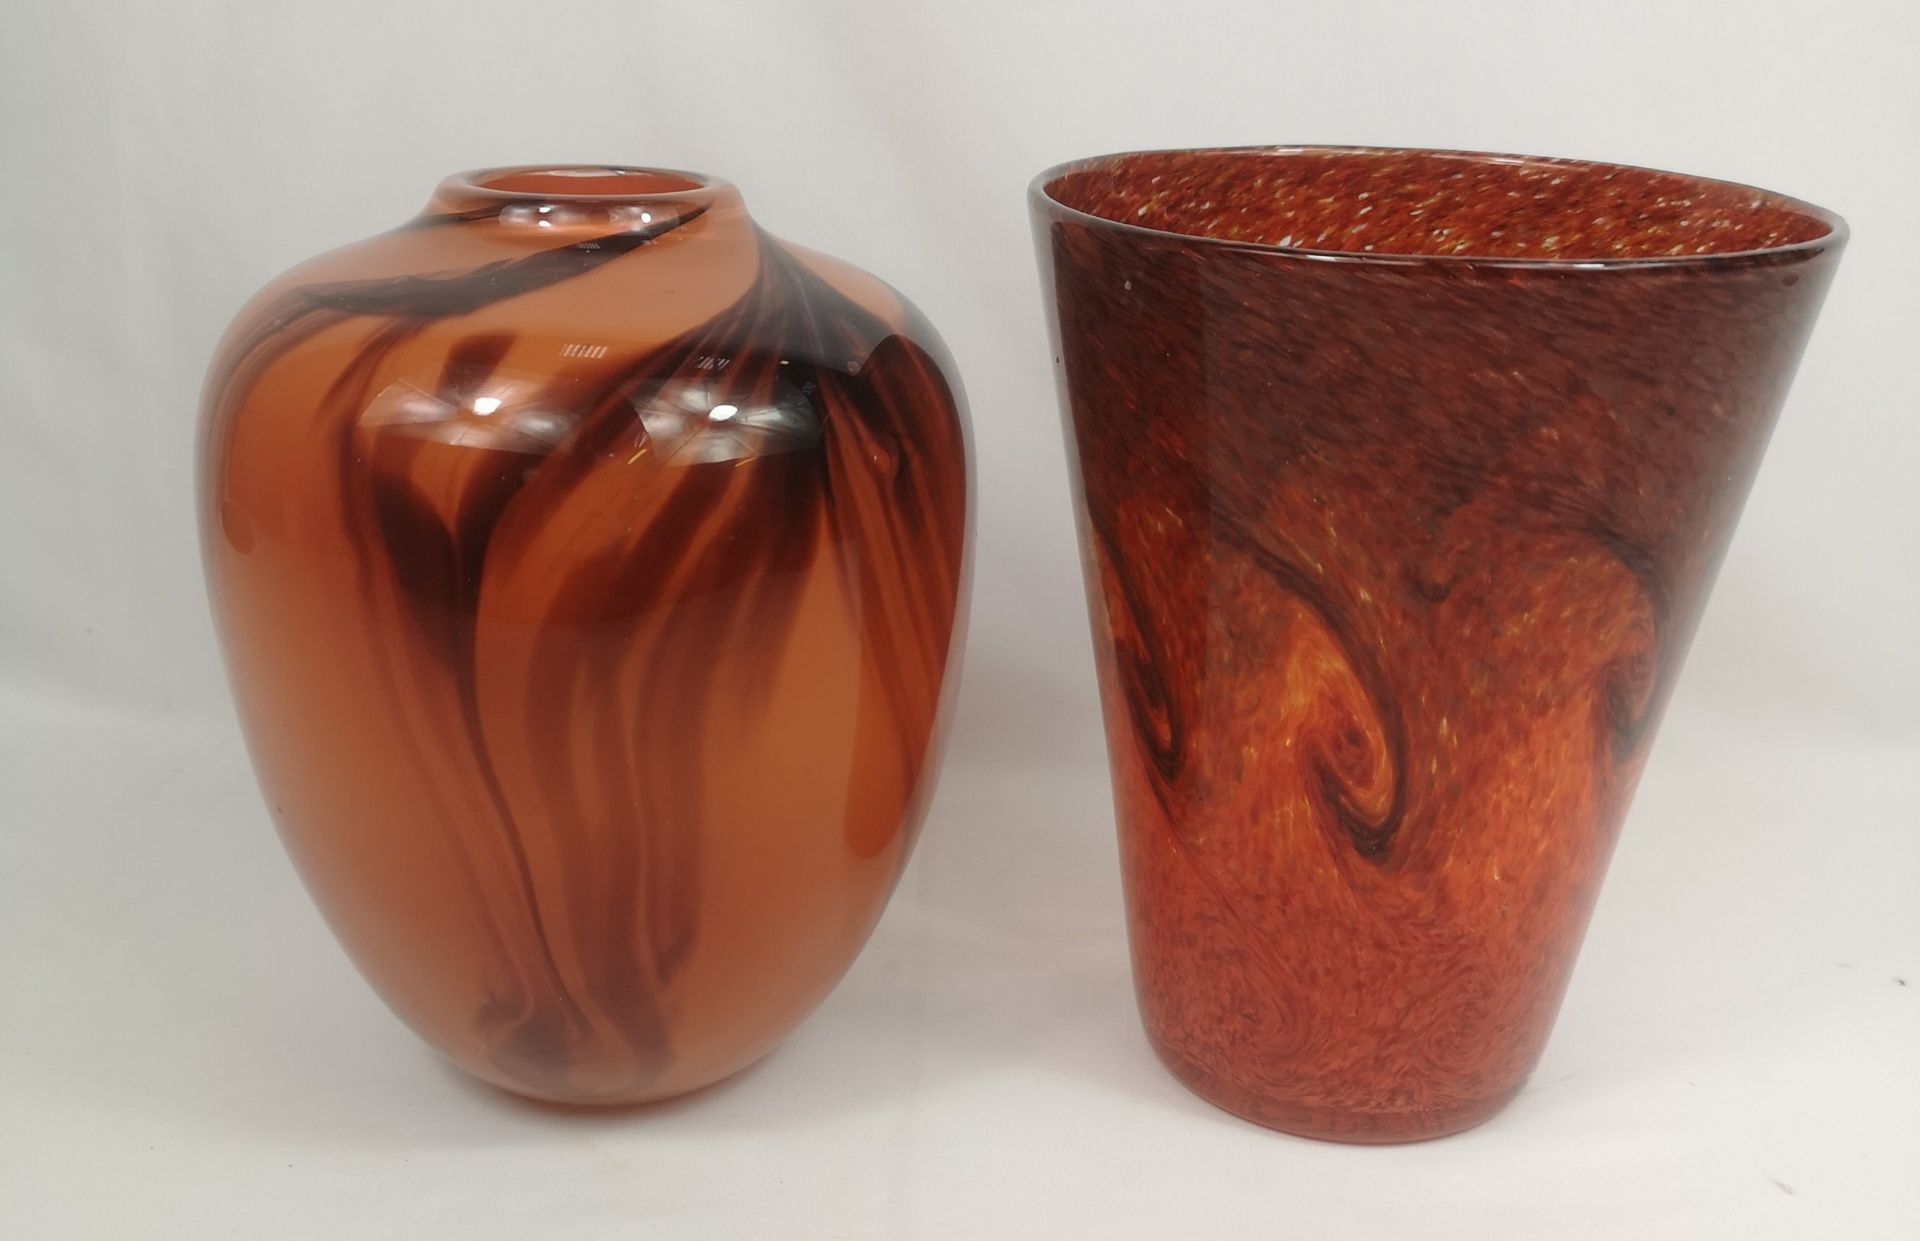 Two art glass vases